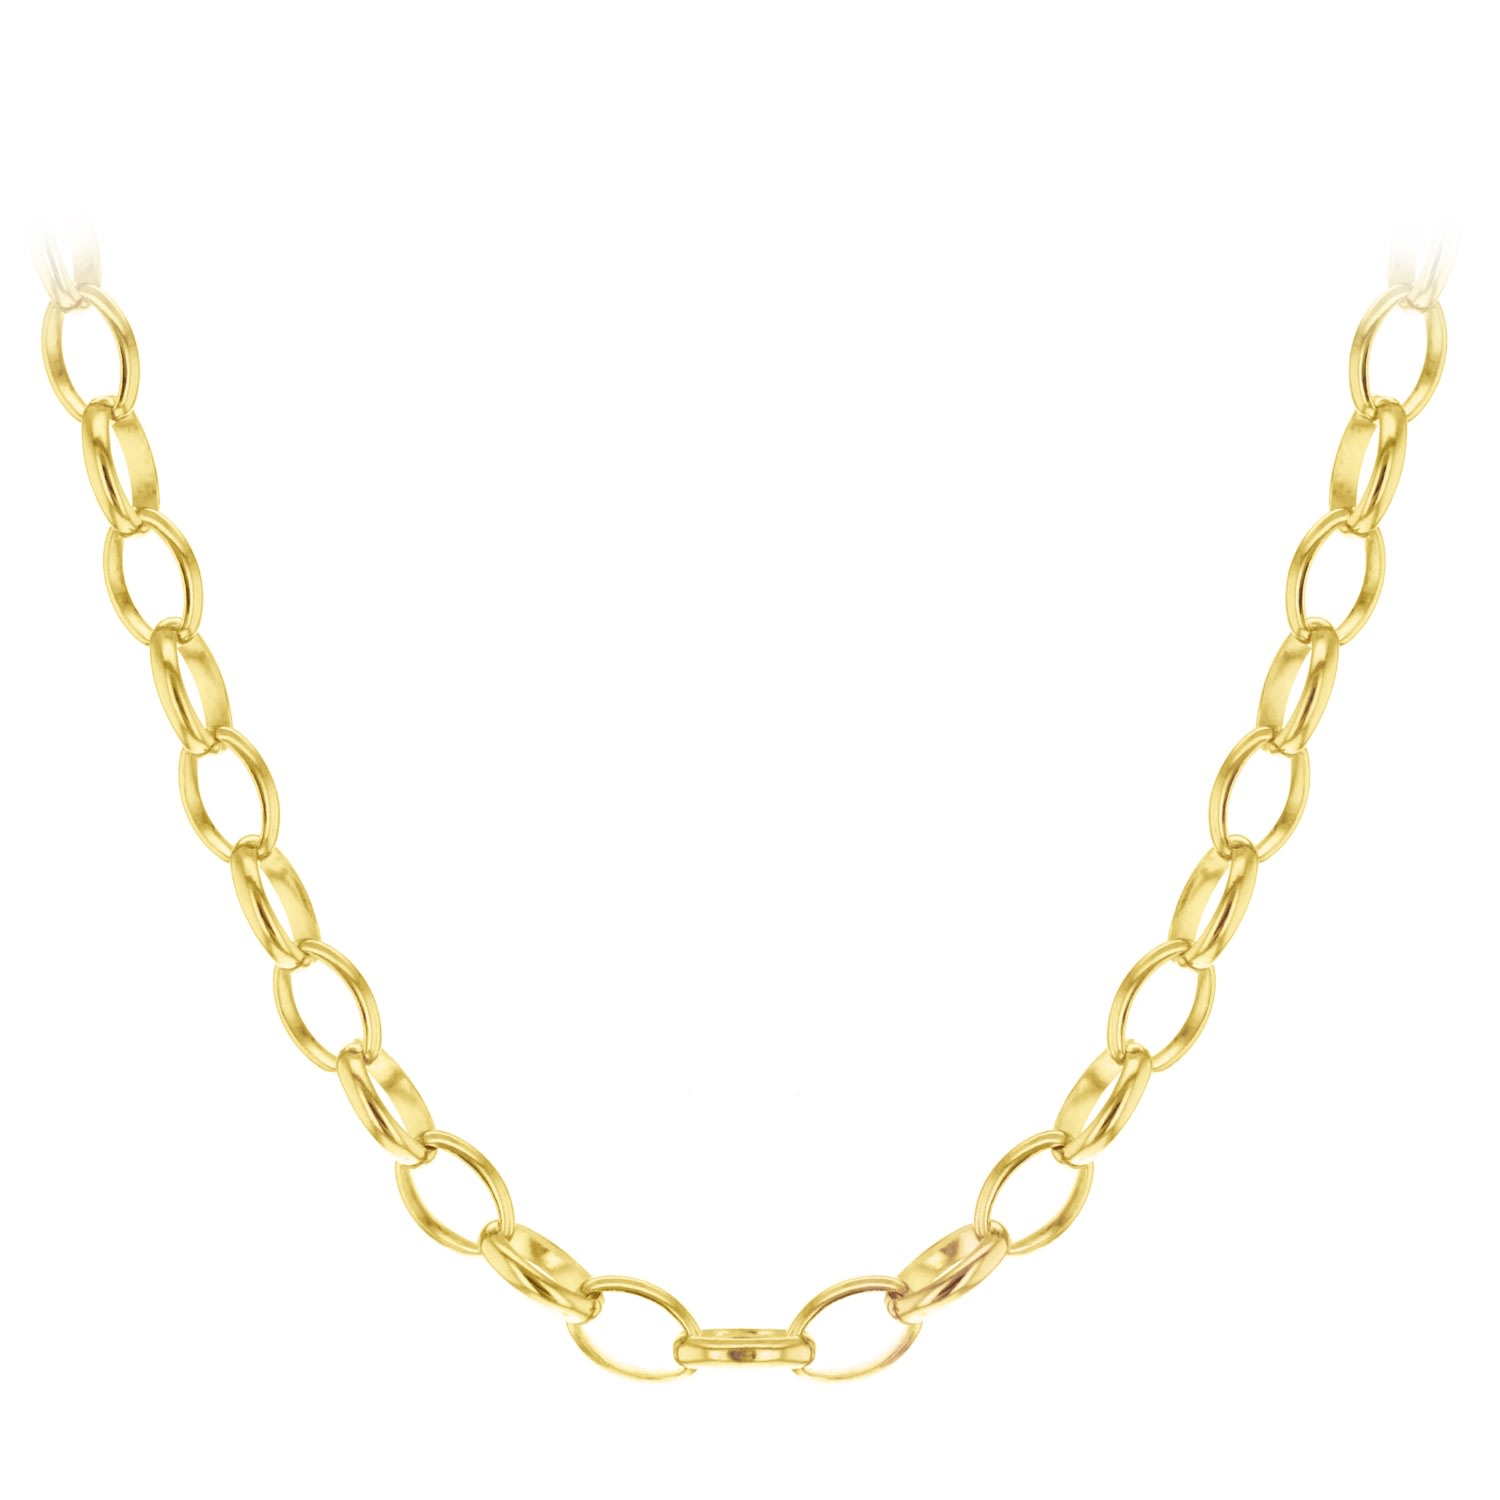 True Rocks Women's Belcher Charm Necklace Cast In Sterling Silver & 18kt Gold Plated